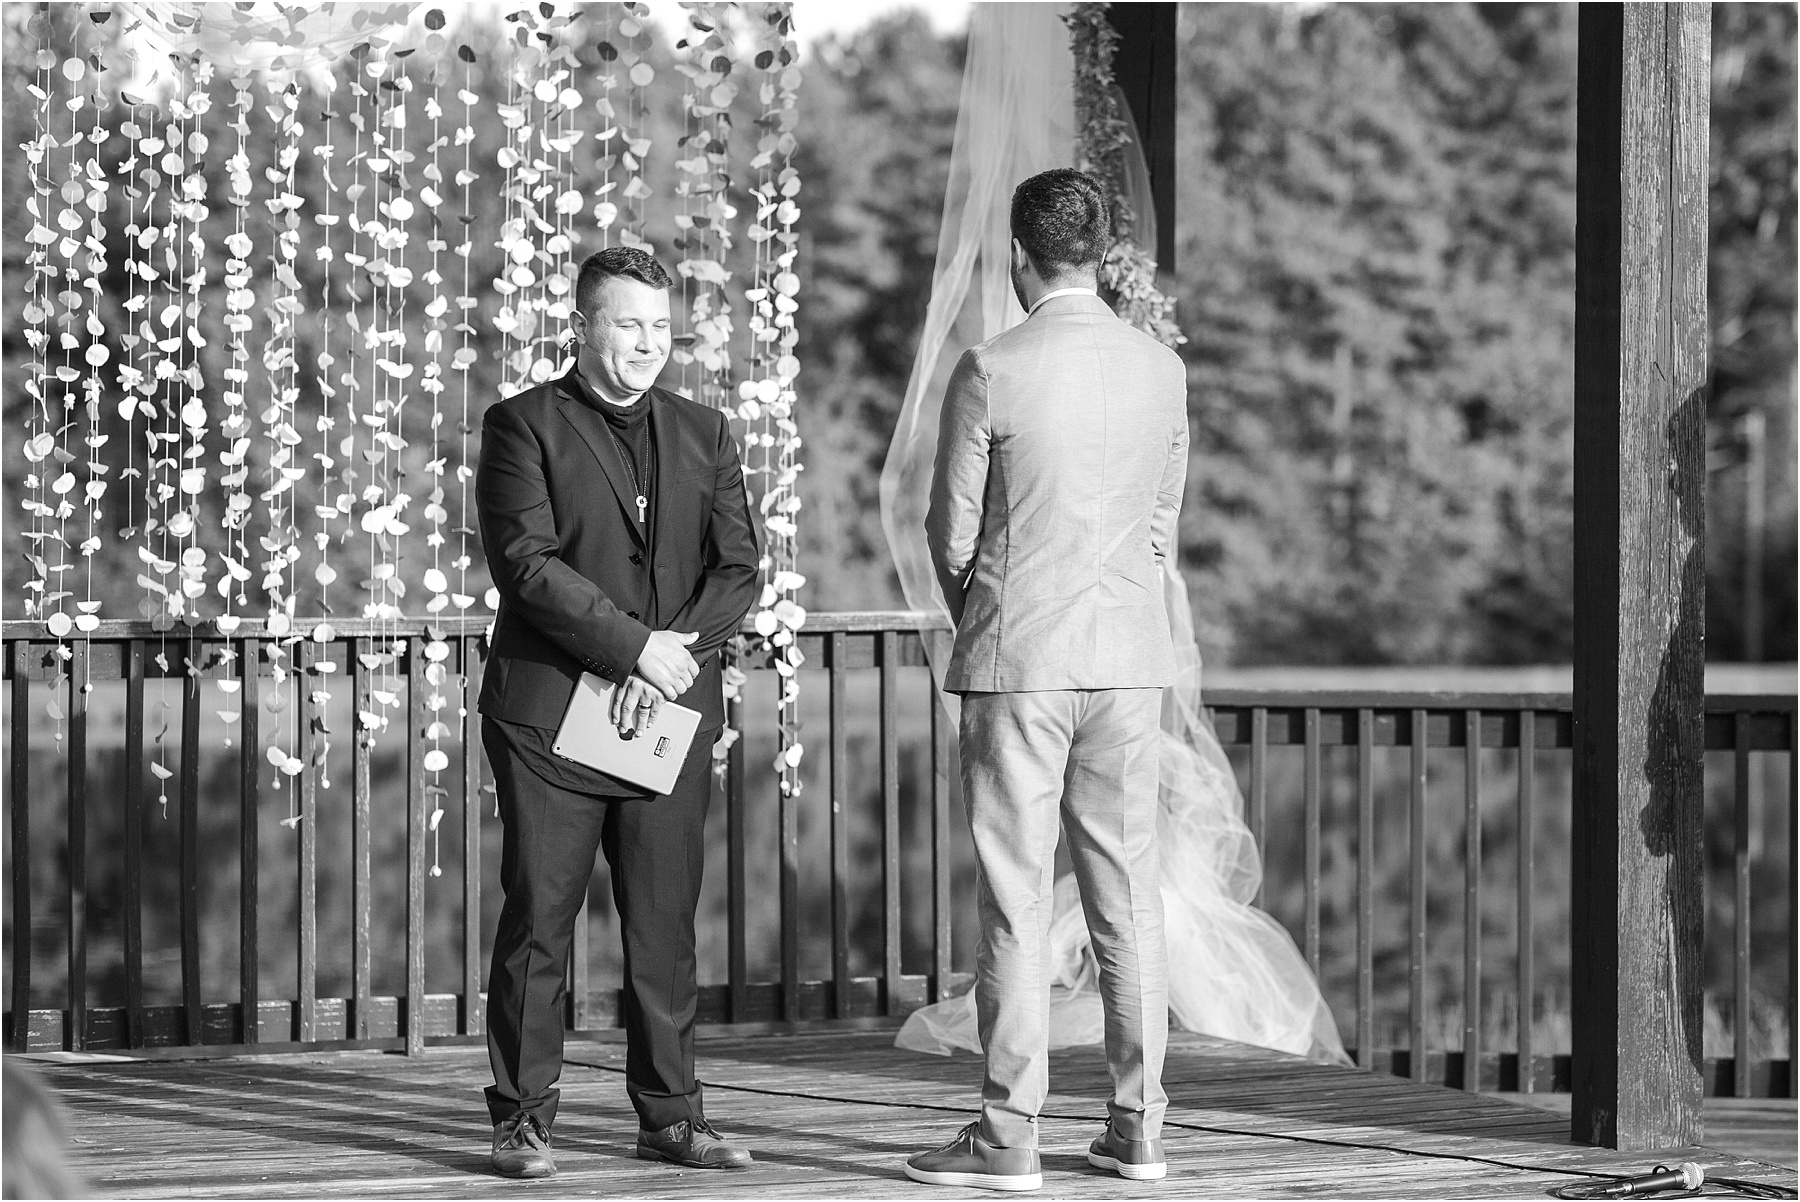 Groom stares away as bride walks down wedding aisle